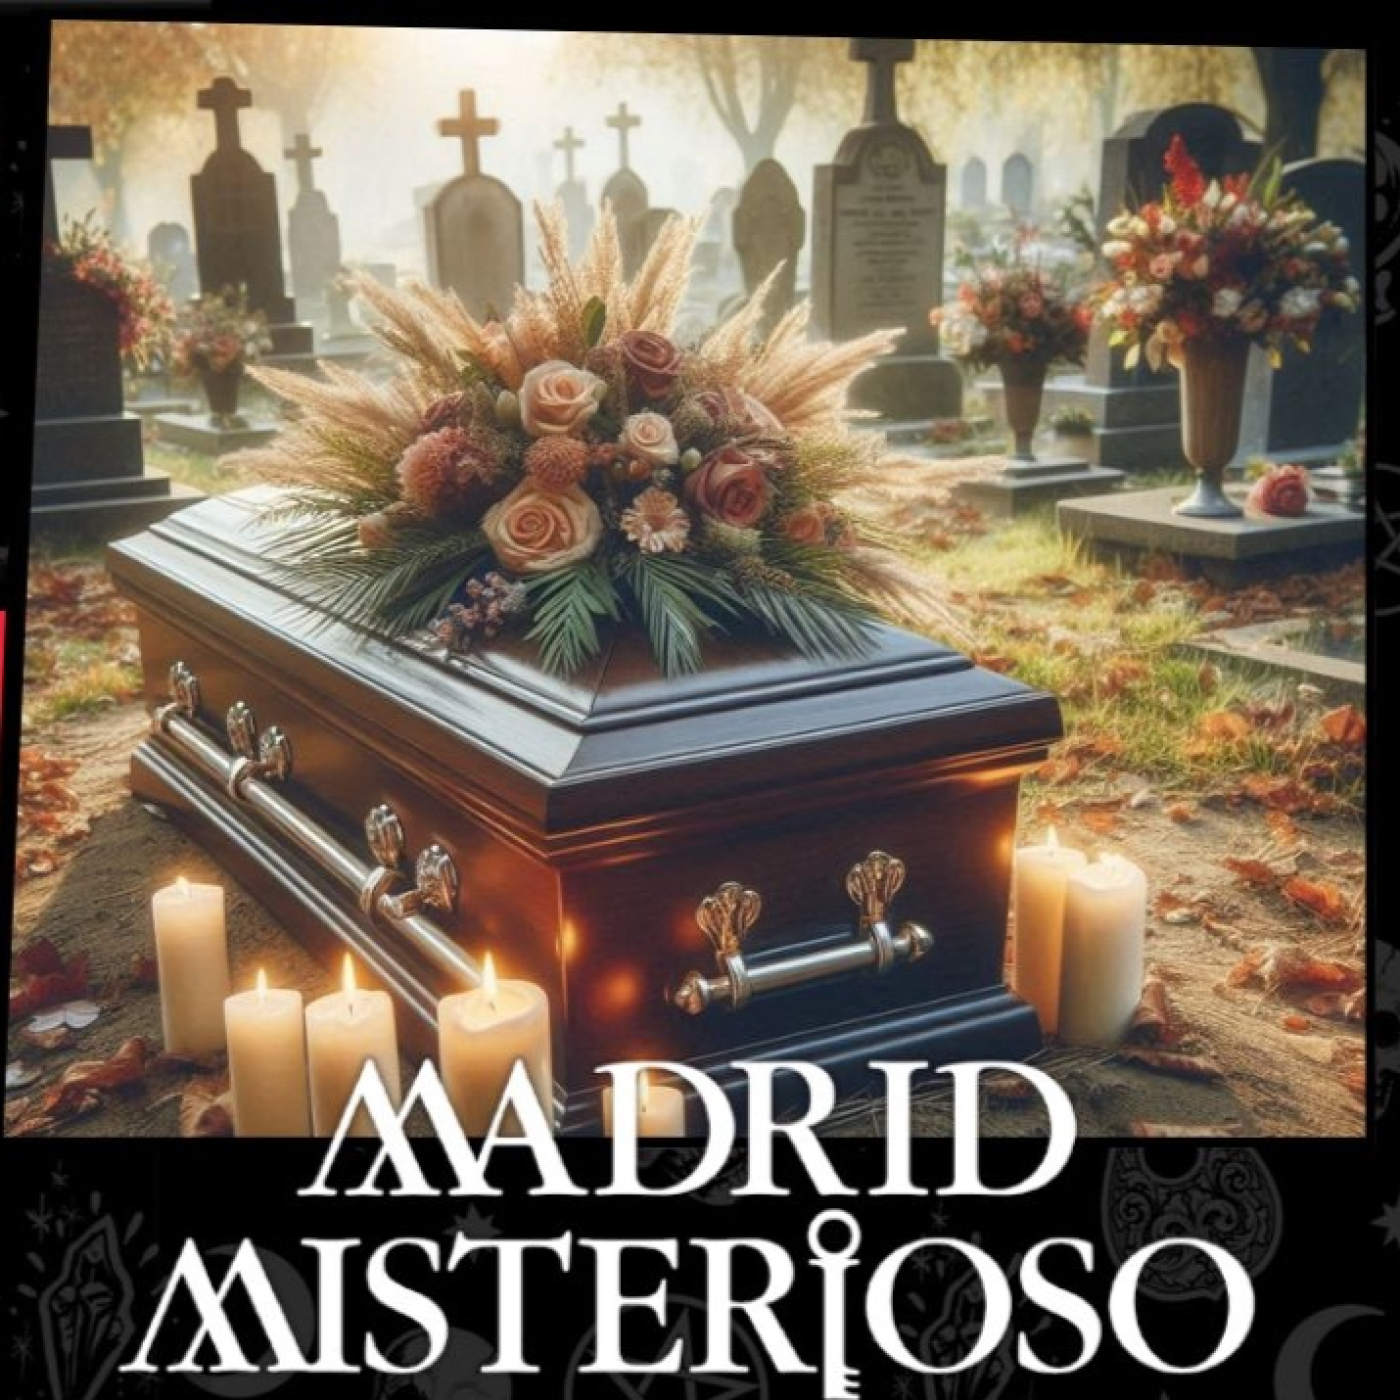 La llamada de la muerte. La tanatopraxia - Madrid Misterioso 5x42